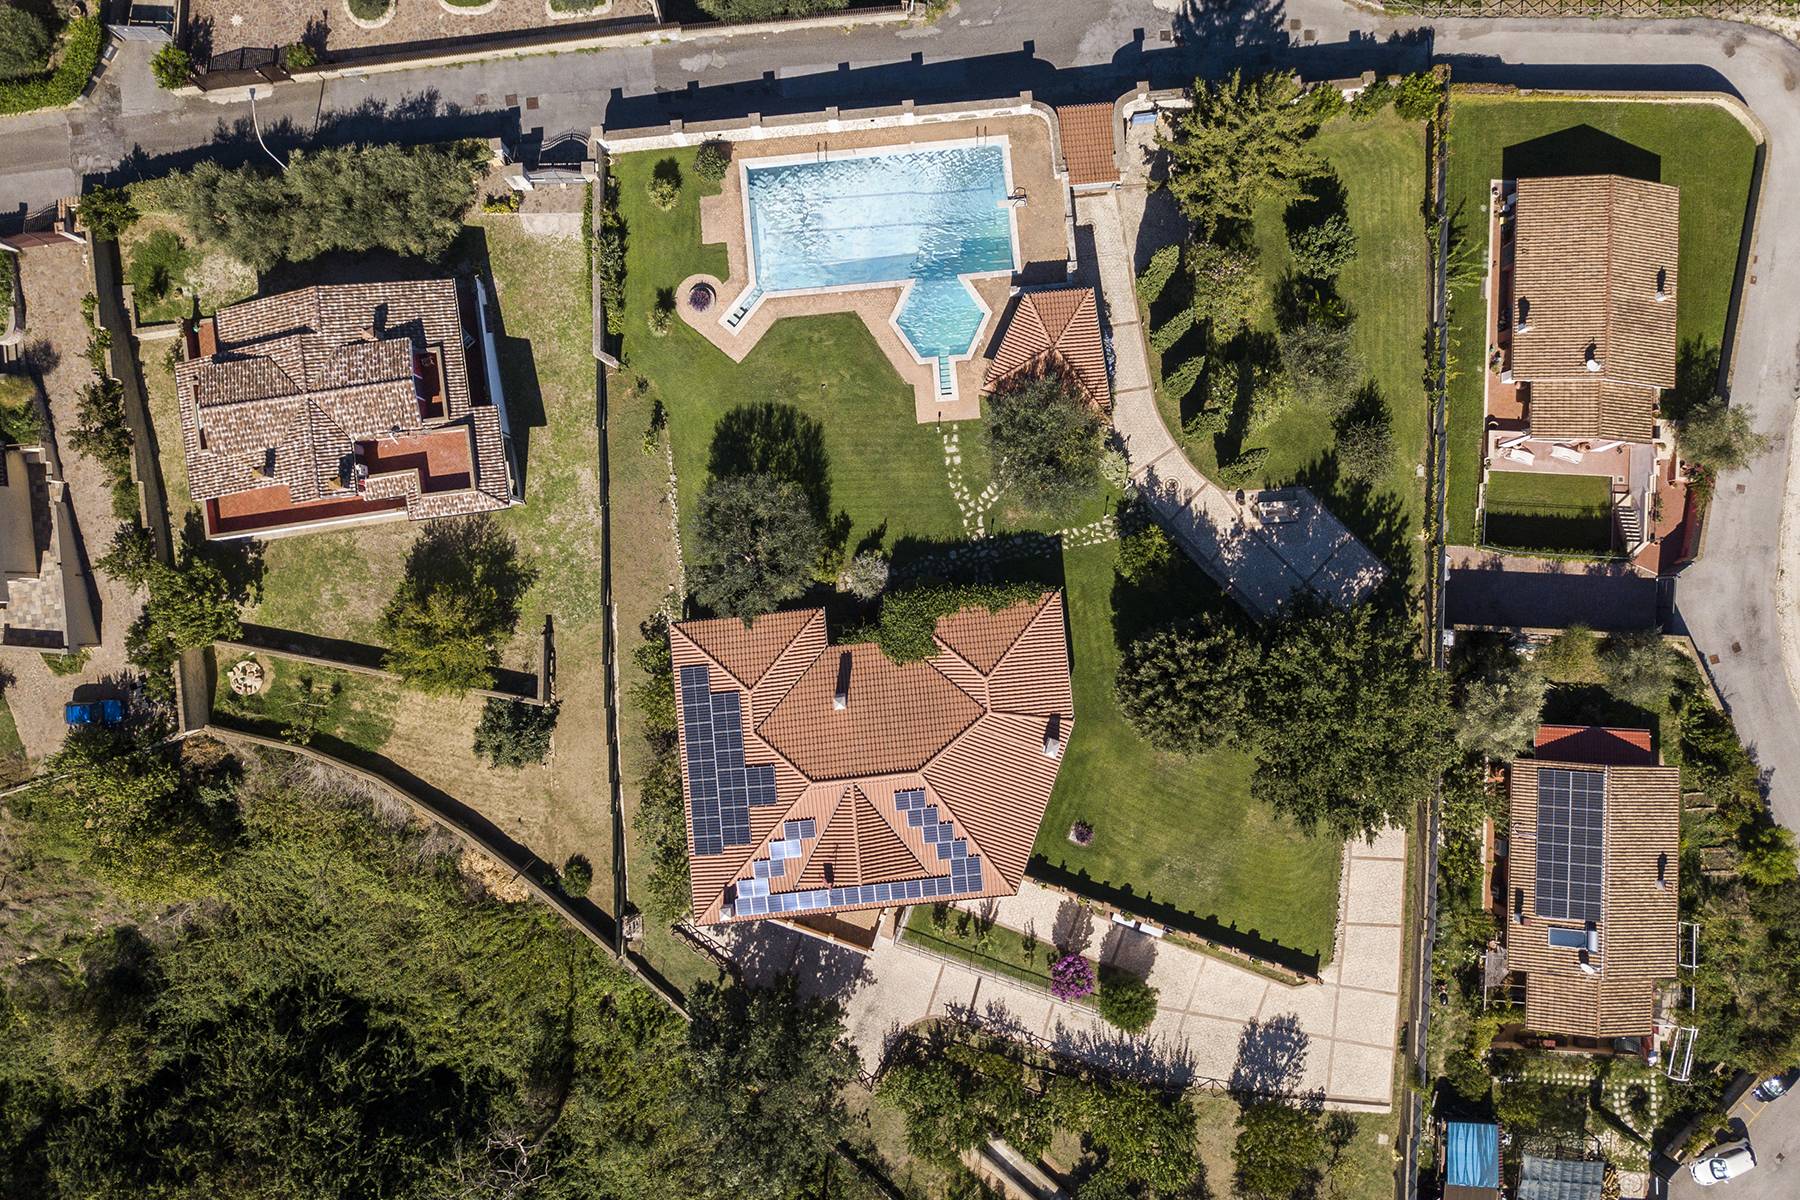 Villa in Vendita a Riano: 5 locali, 500 mq - Foto 9